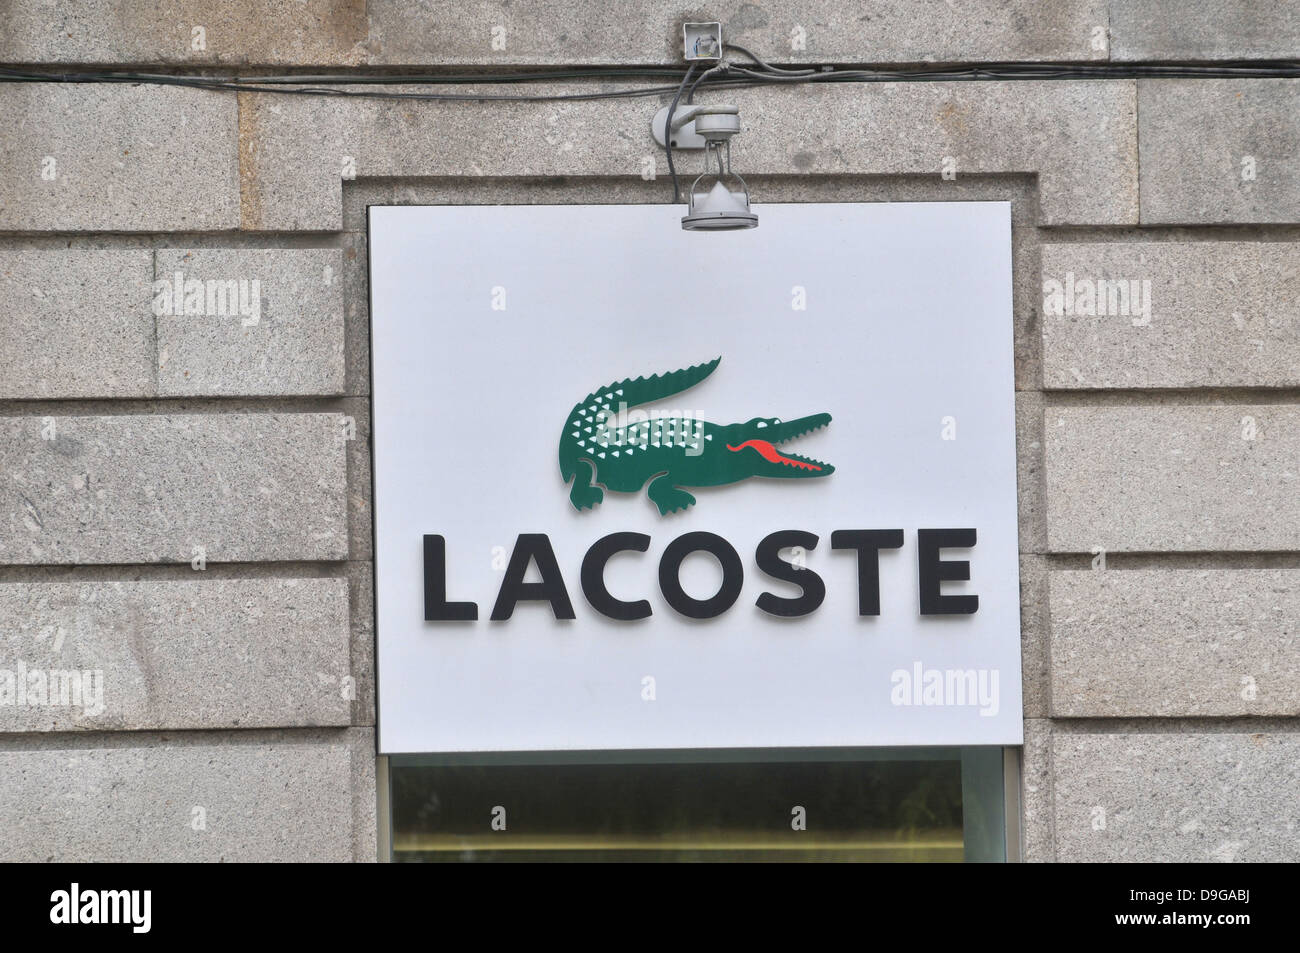 Lacoste logo sign crocodile on facade of store Braga Portugal Stock Photo